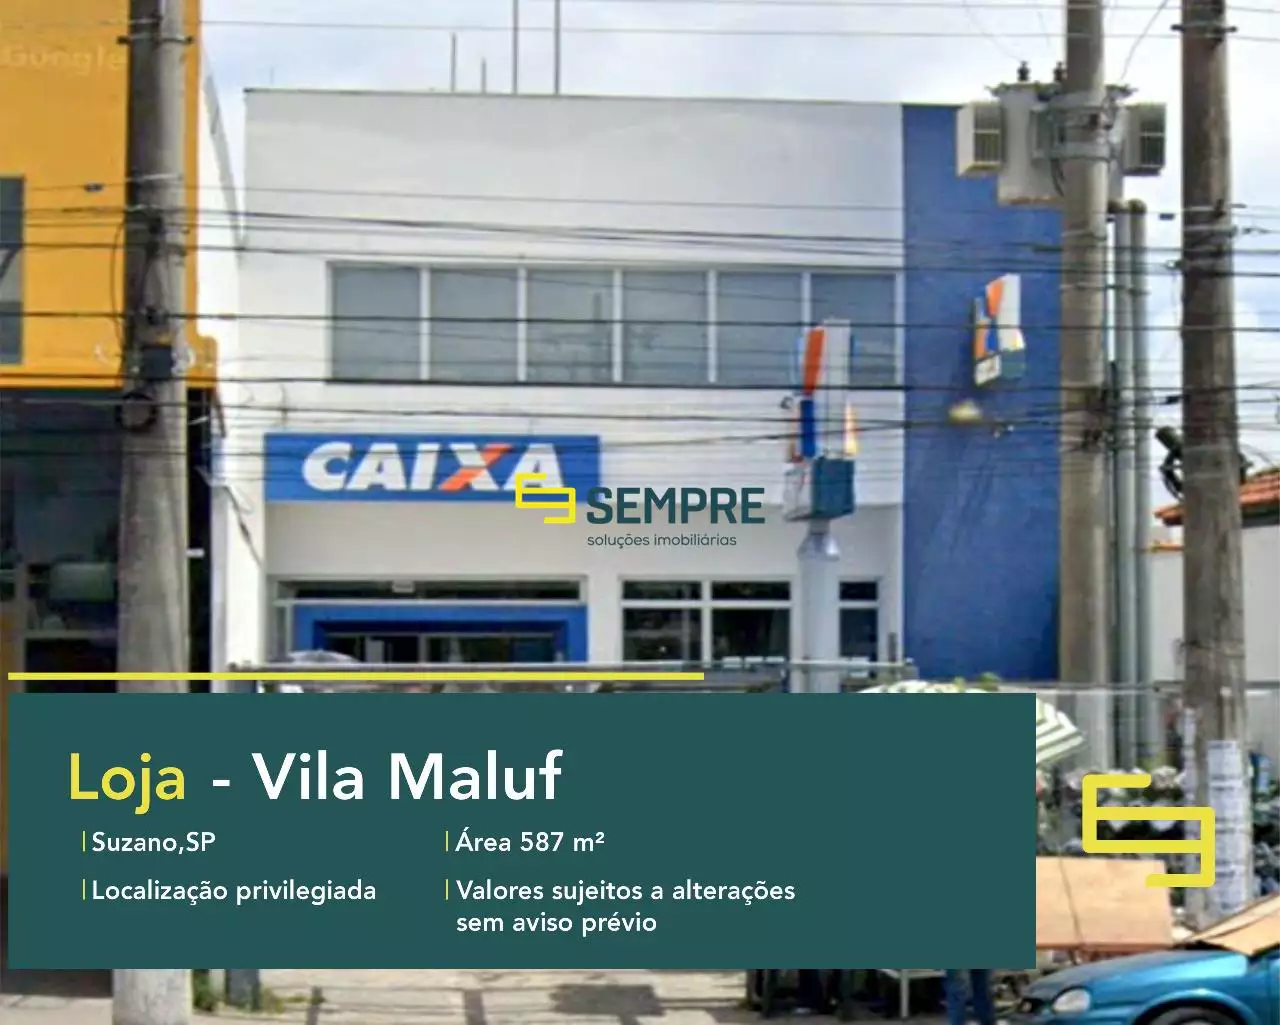 Loja para vender na Vila Maluf em São Paulo, em excelente localização. O estabelecimento comercial conta com área de 587,77 m².